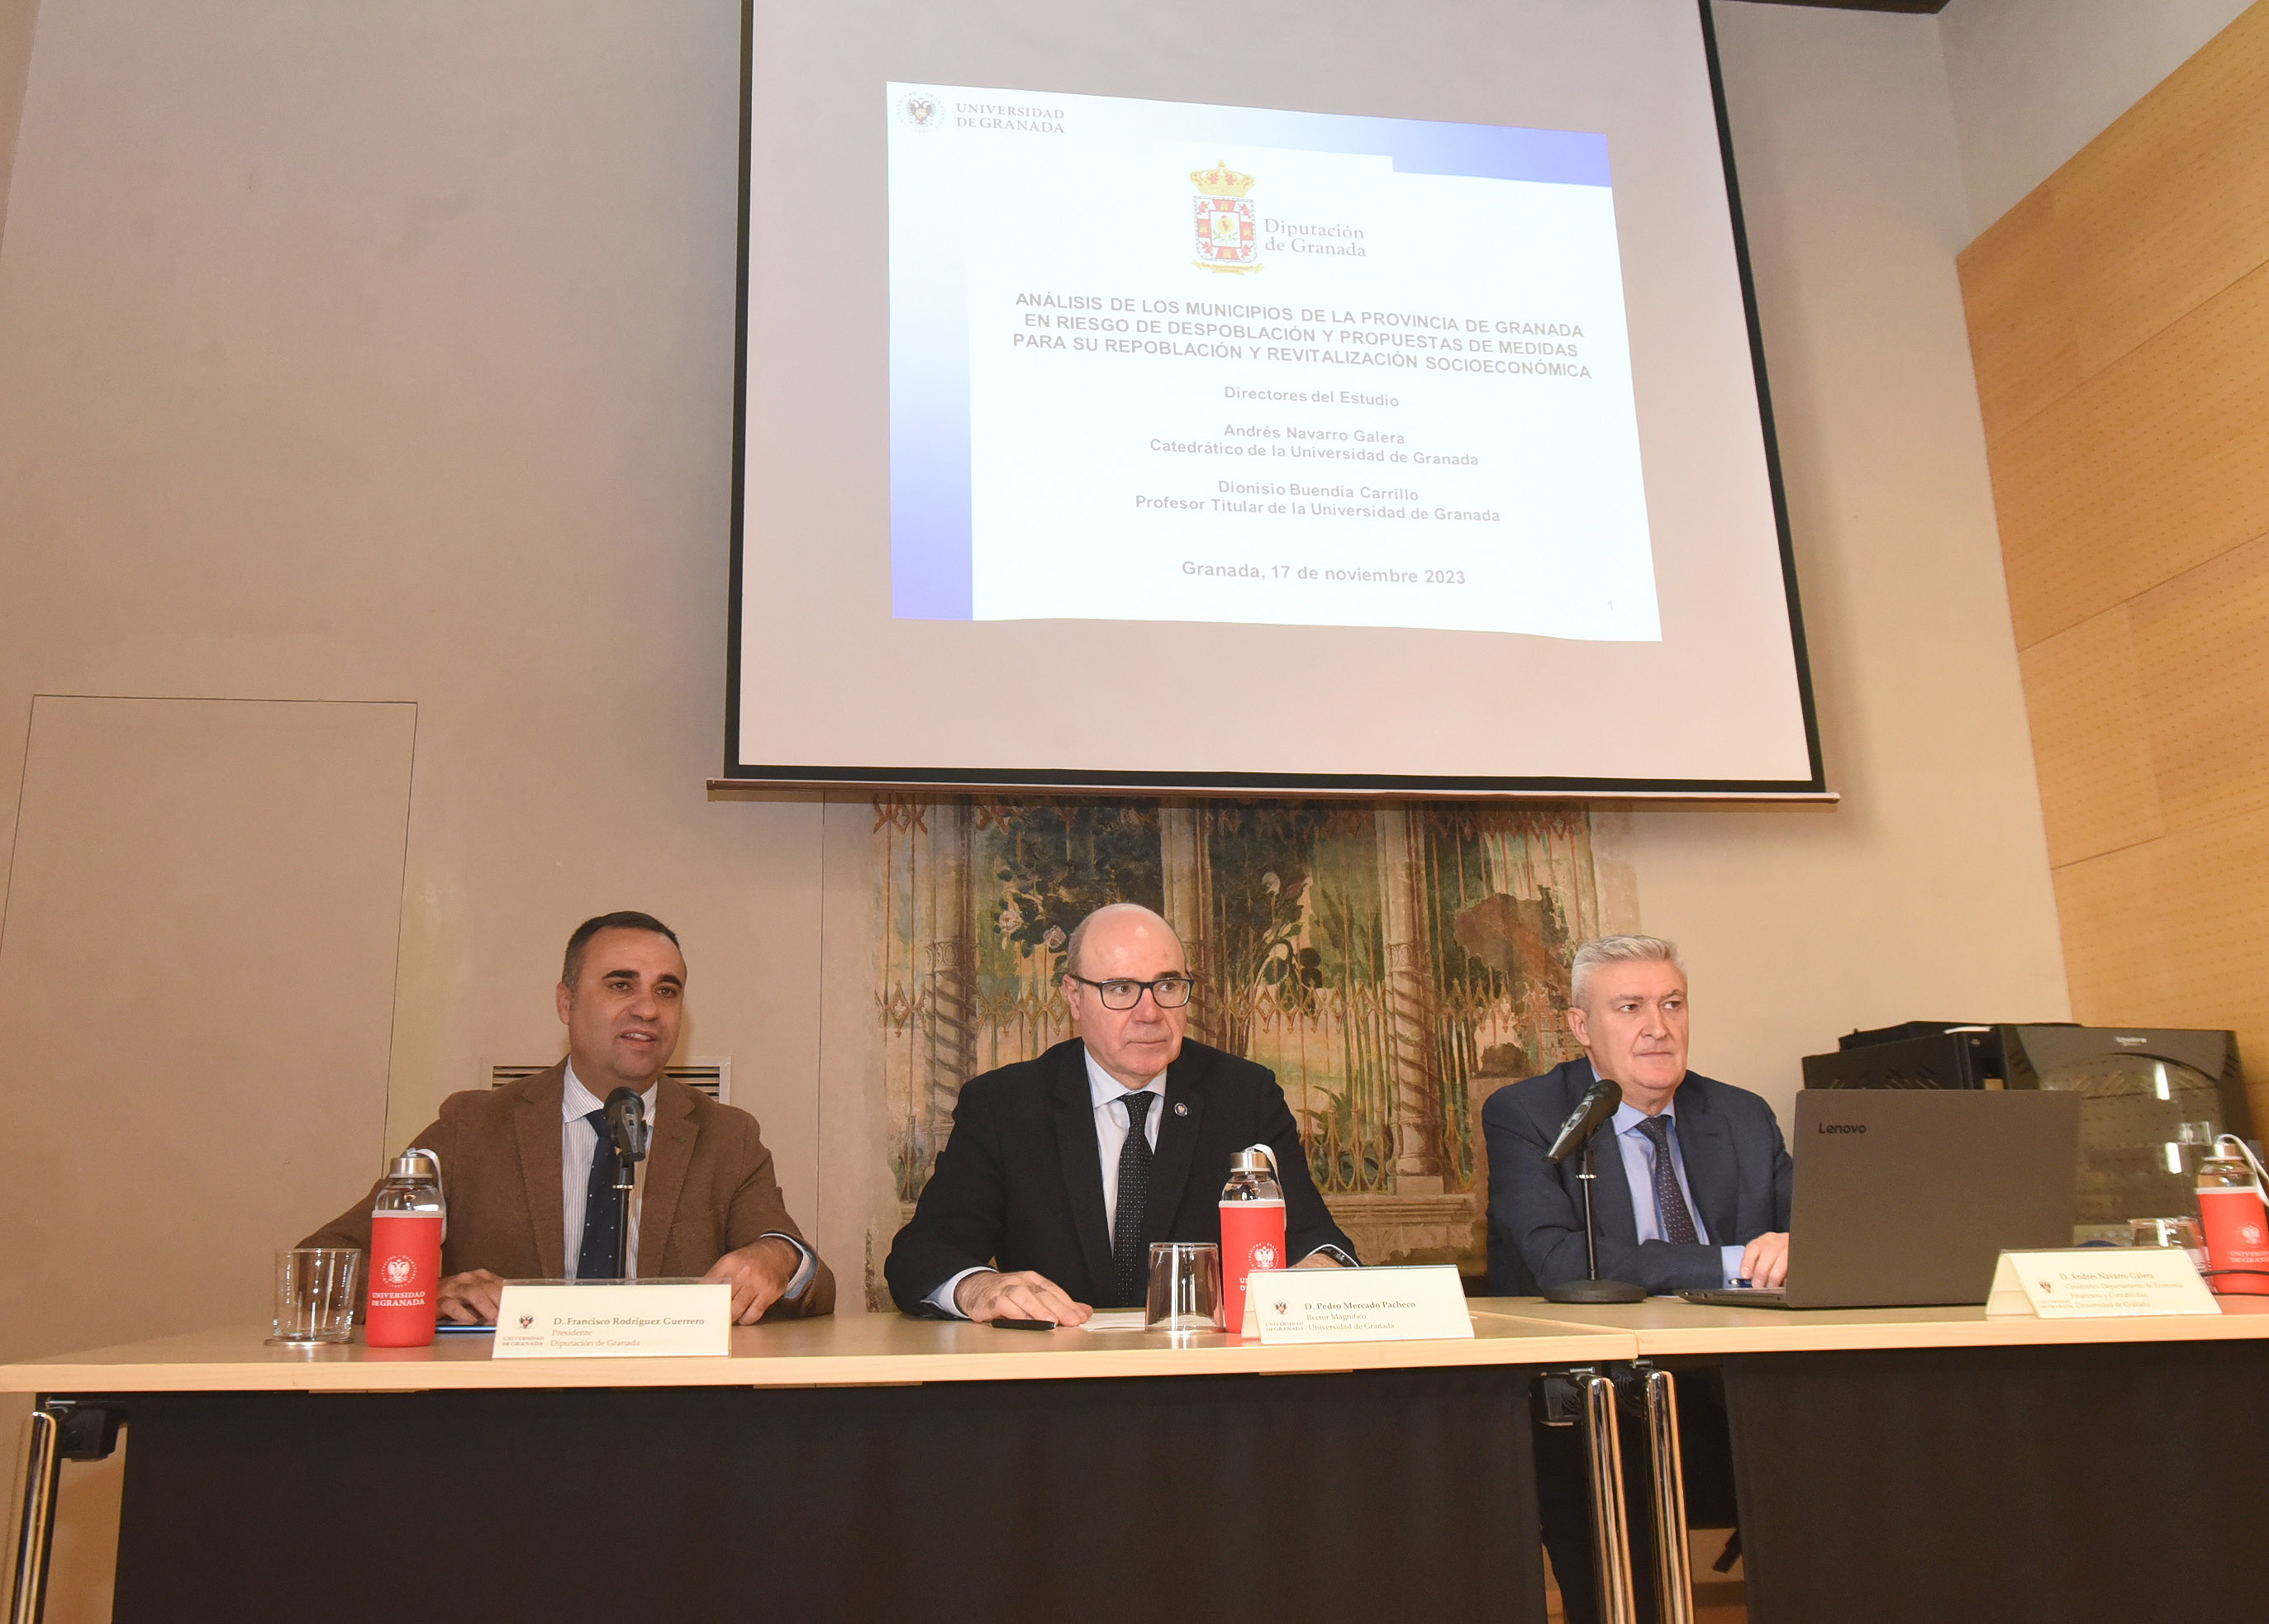 Diputación y UGR dan a conocer los resultados de un estudio sobre la realidad sociodemográfica de la provincia granadina
